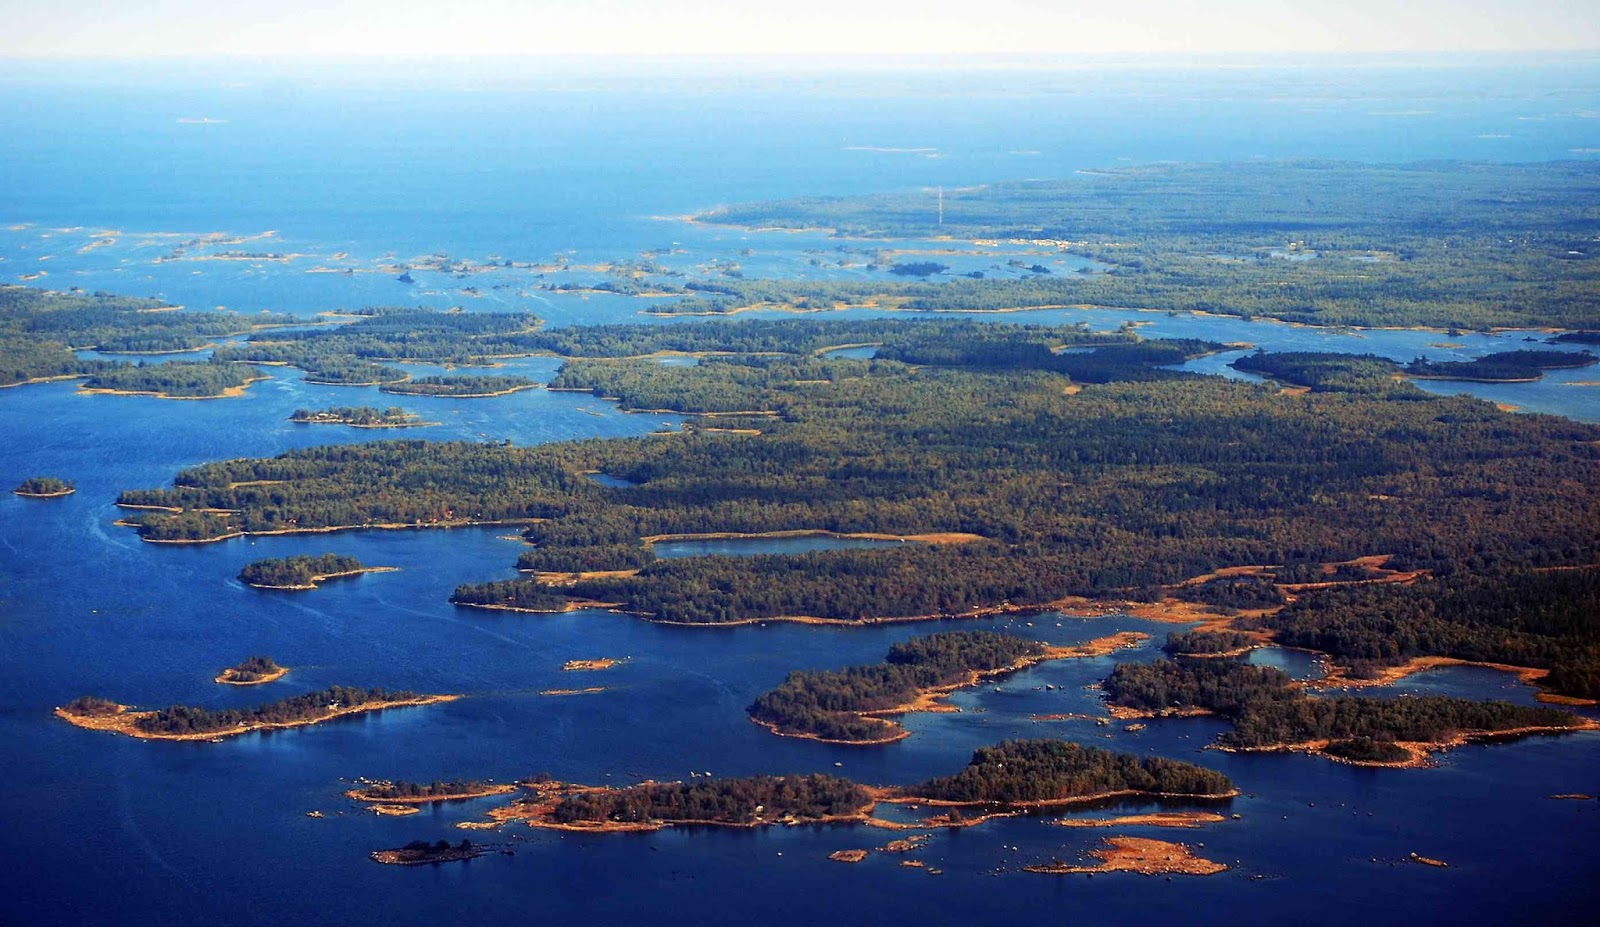 Тысяча озер где. Озерное плато Финляндии. Финляндия Страна тысячи озер. Финляндия тысяча озер. Финляндия Страна 1000 озер.